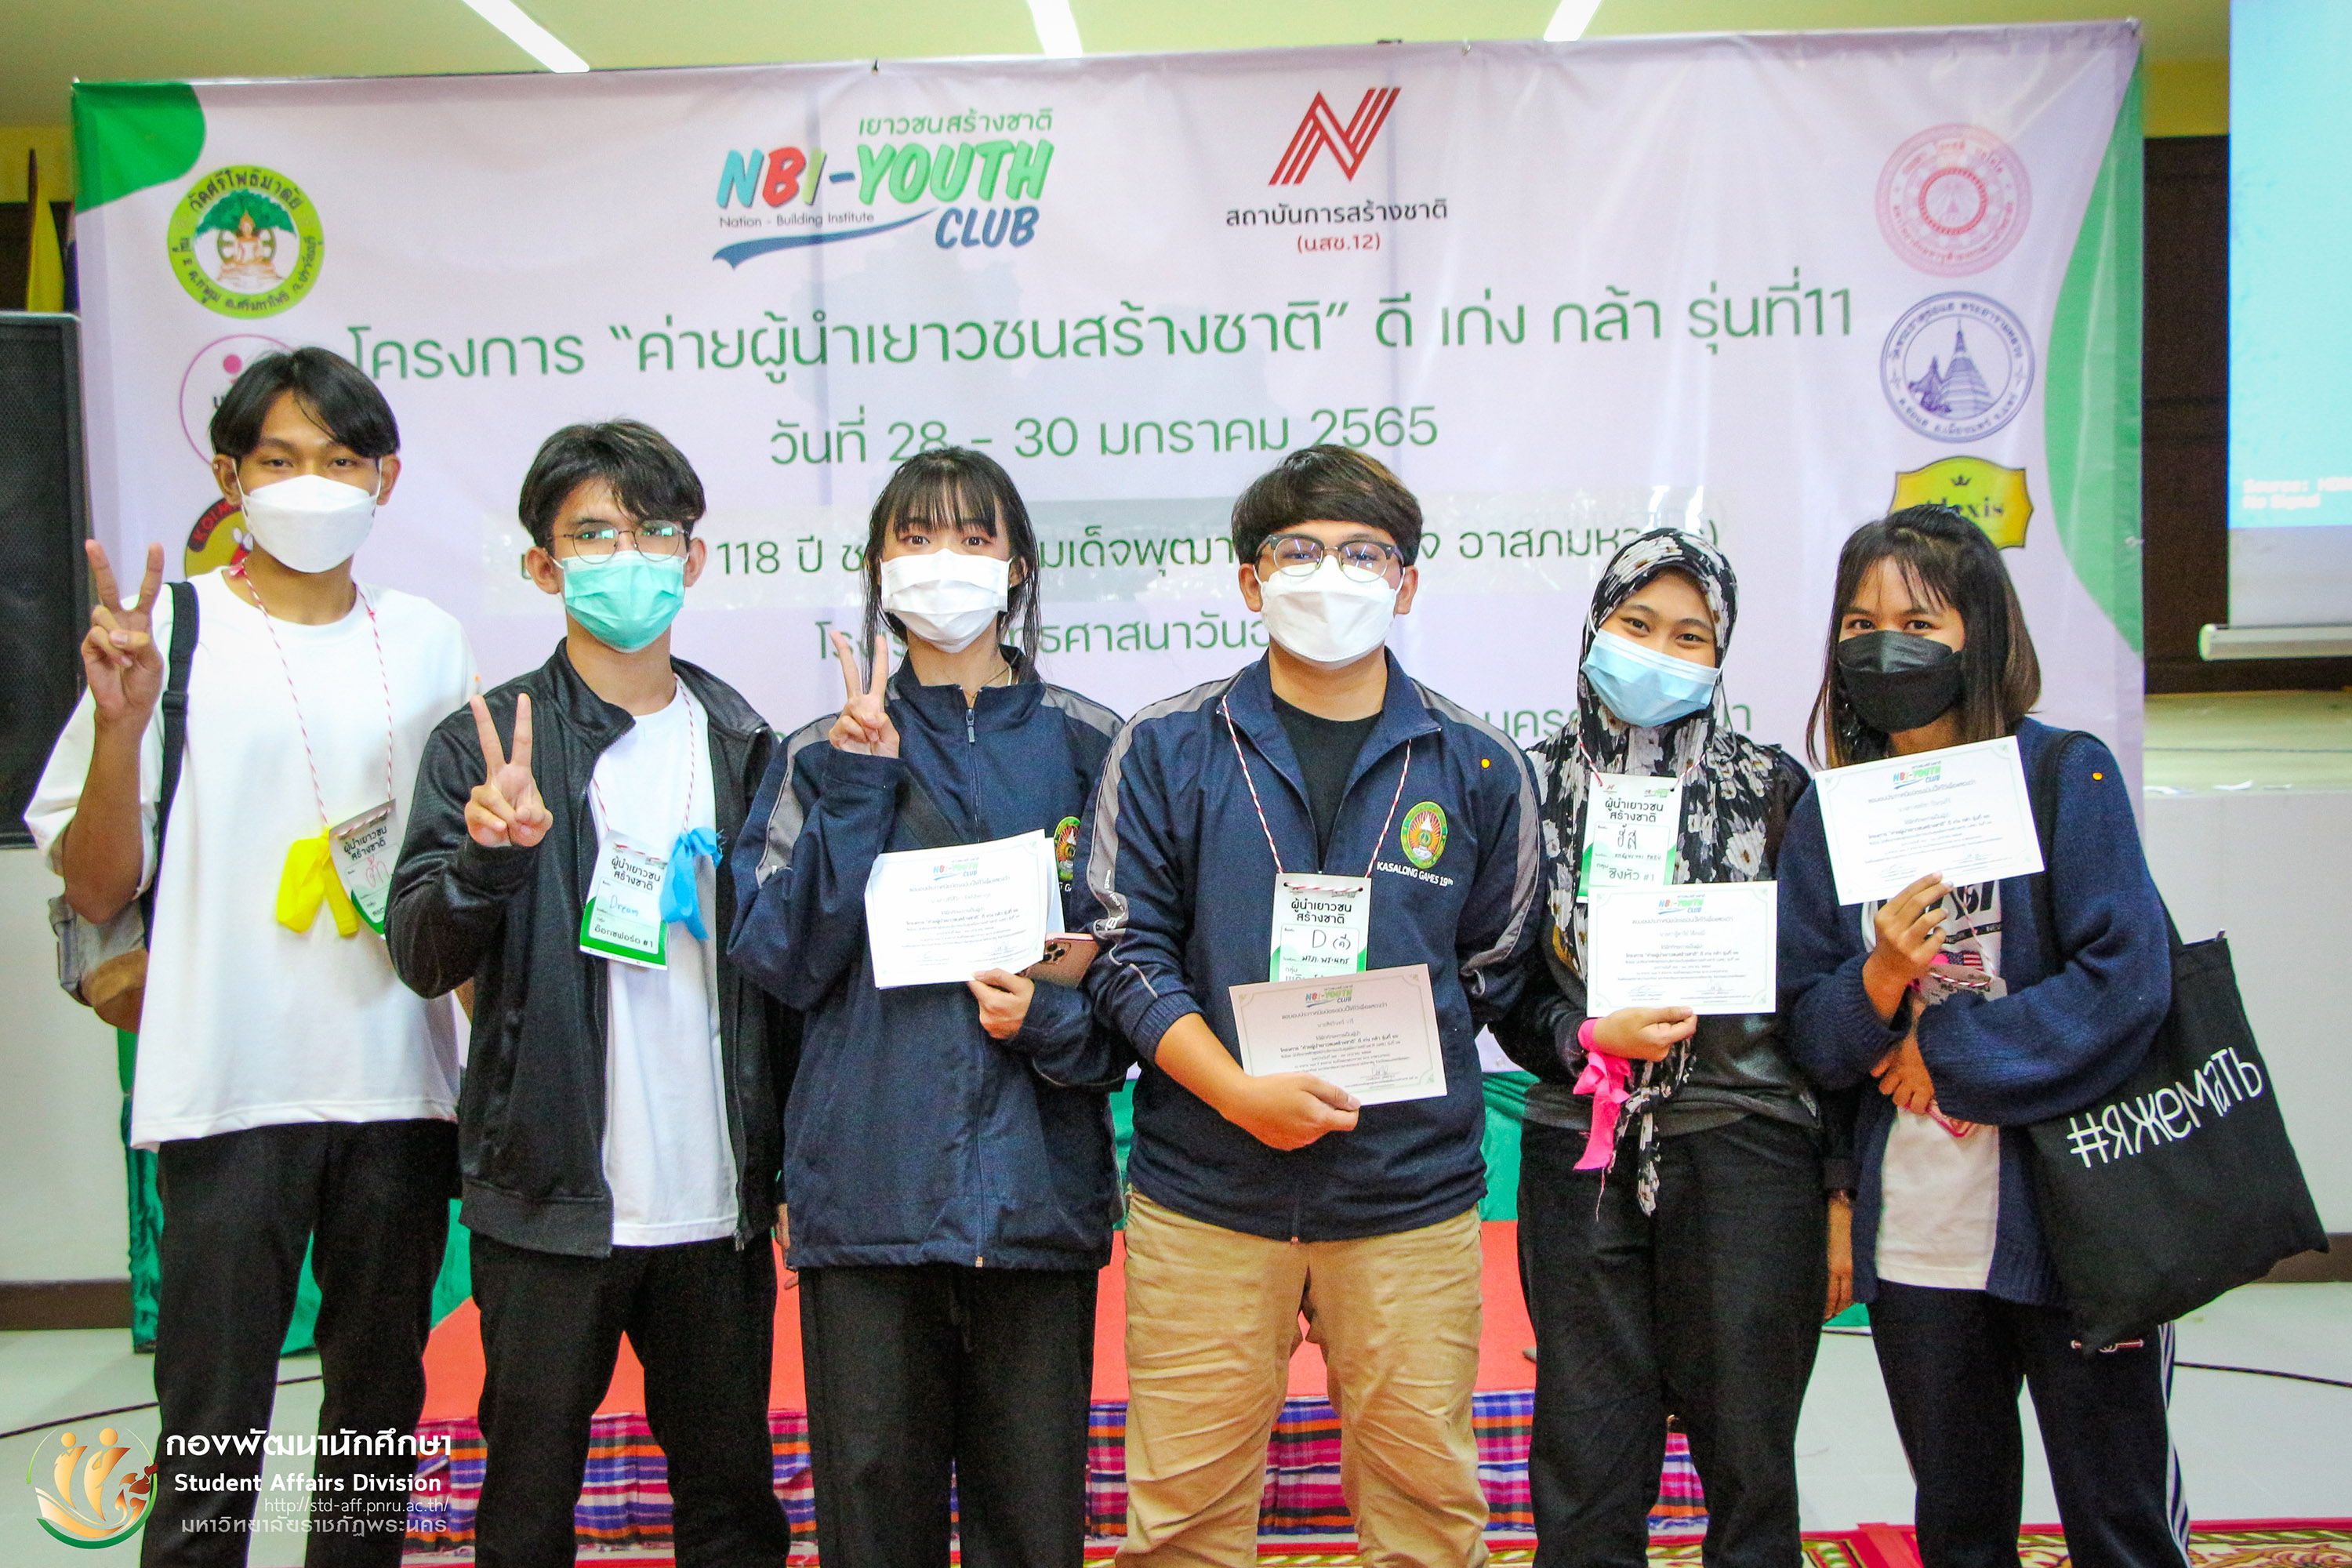 28 - 30 ธันวาคม 2565 ค่ายผู้นำเยาวชนสร้างชาติ (NBI-Youth Camp)